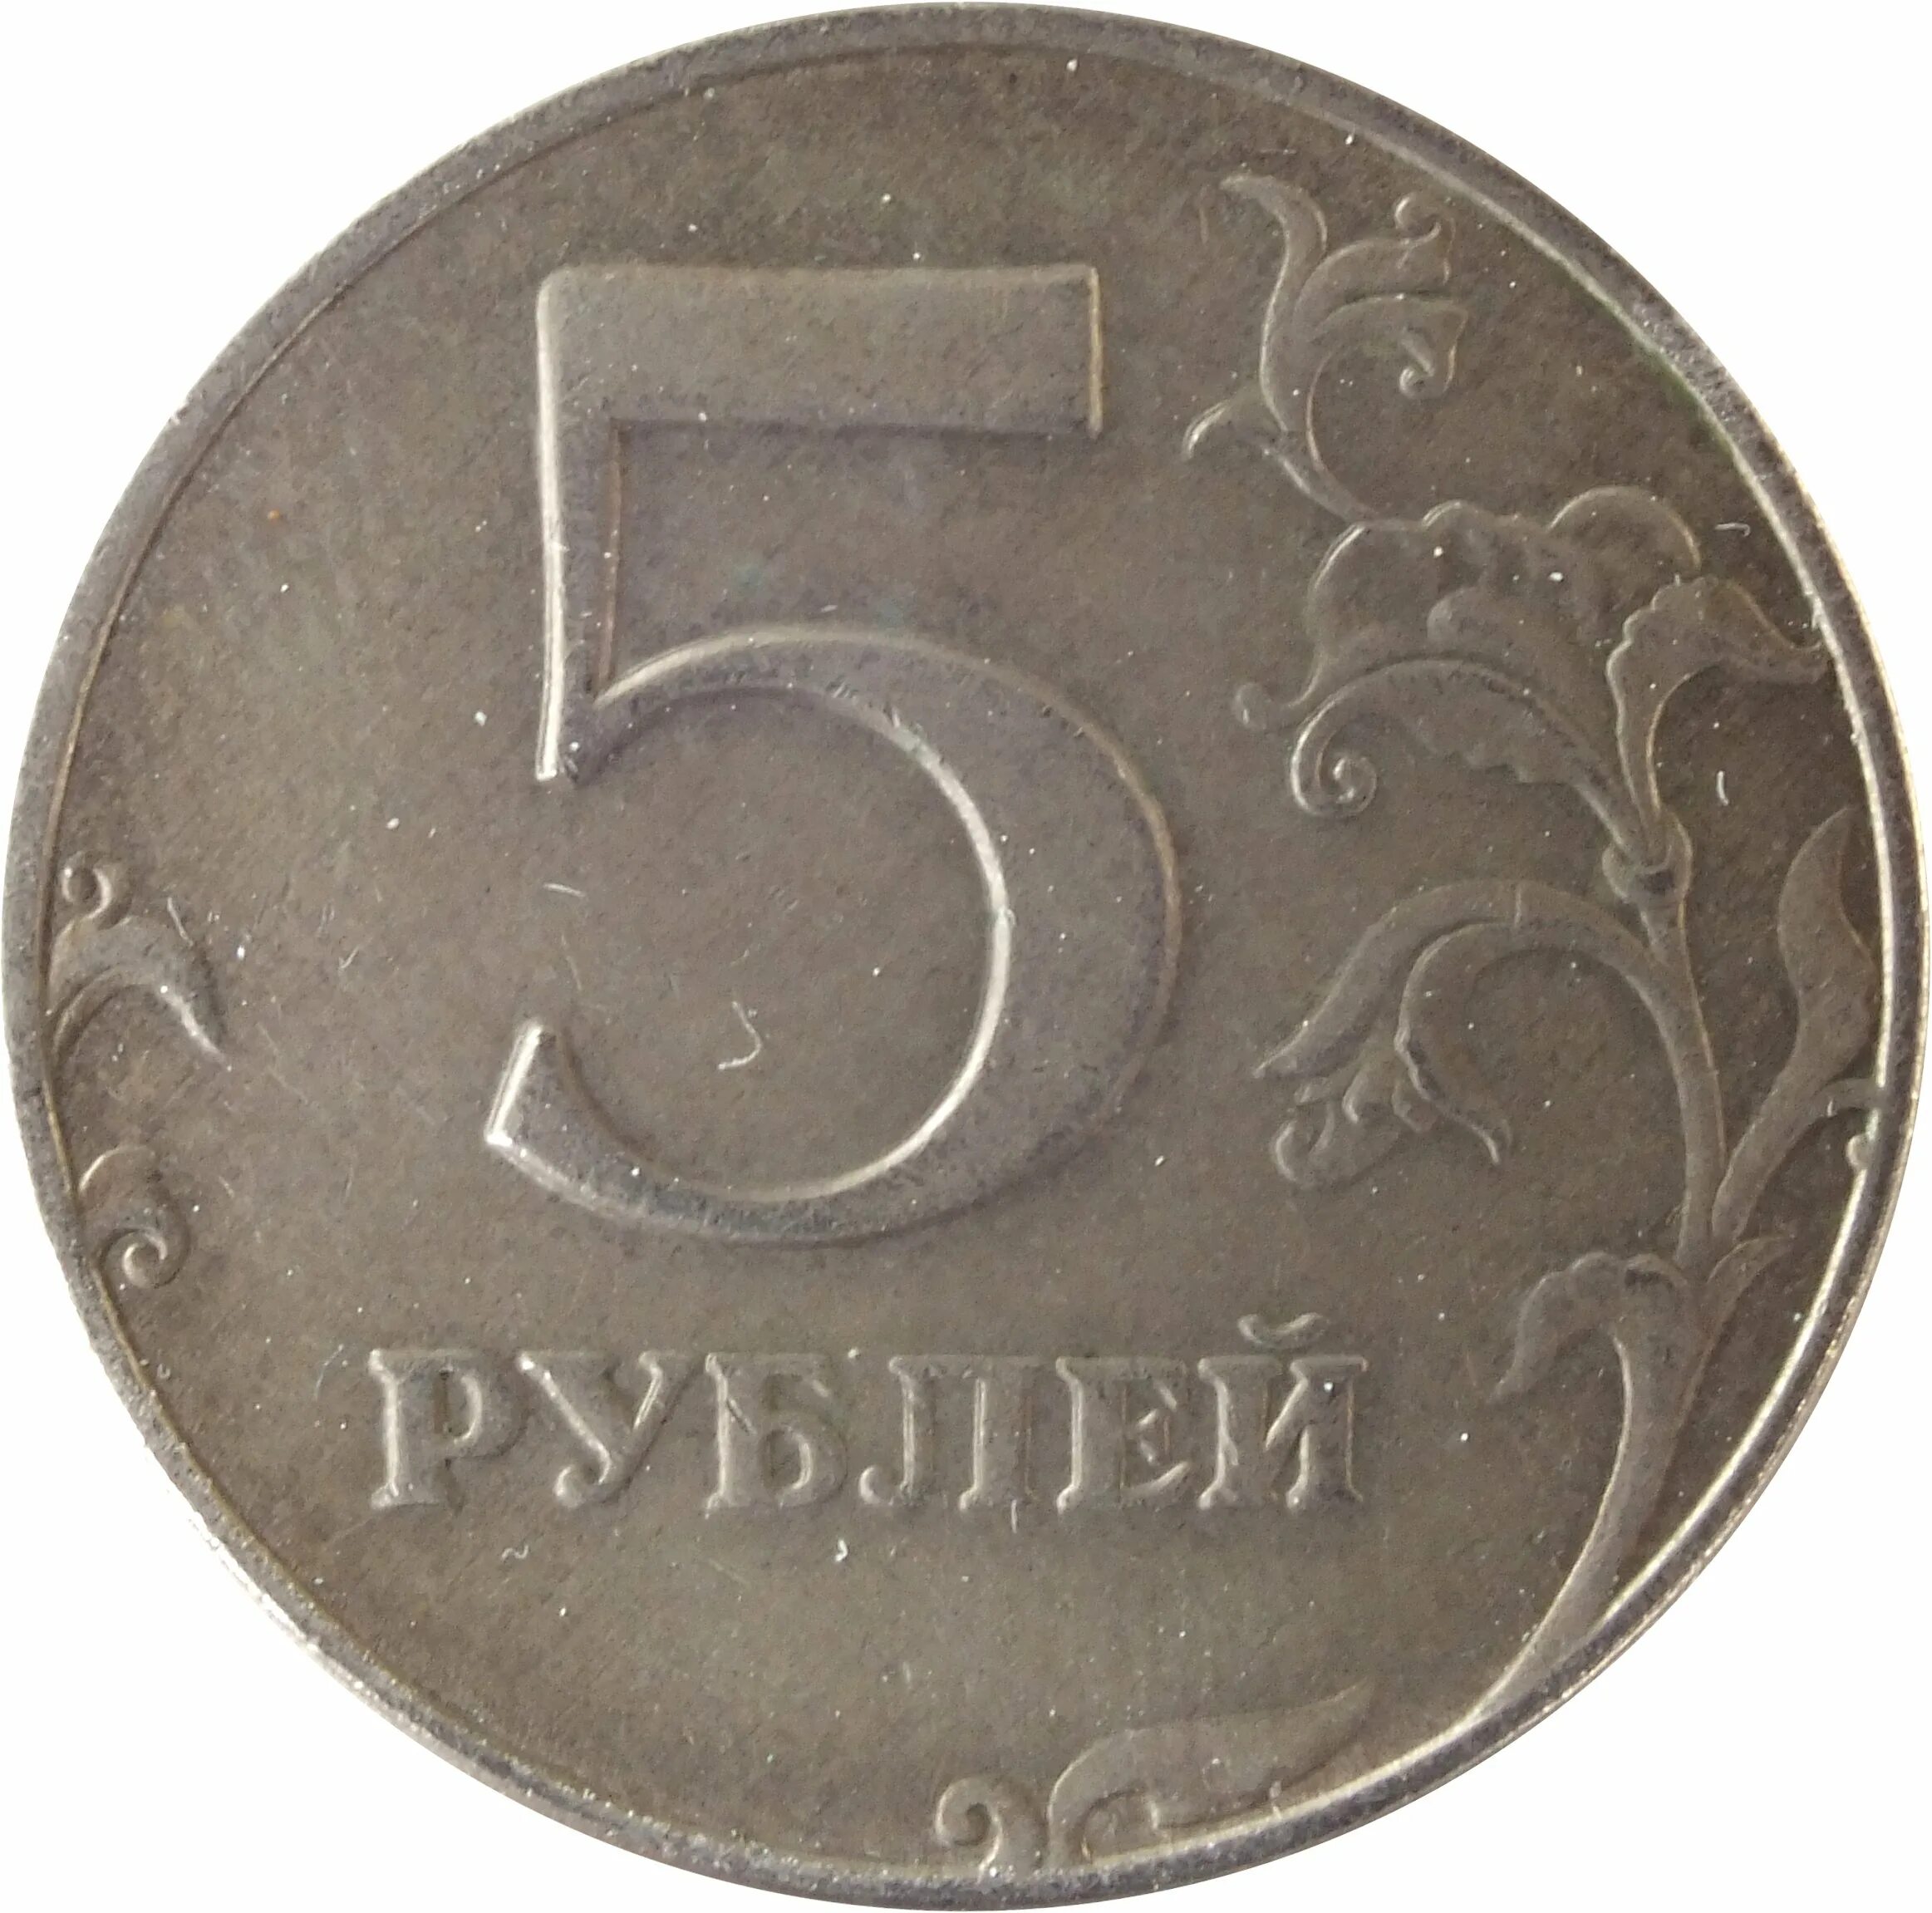 5 рублей плюс 5 рублей. Монета 5 рублей. Монета 5 рублей реверс. Монета "5 рублей 1907 года". Монета 5 рублей без фона.